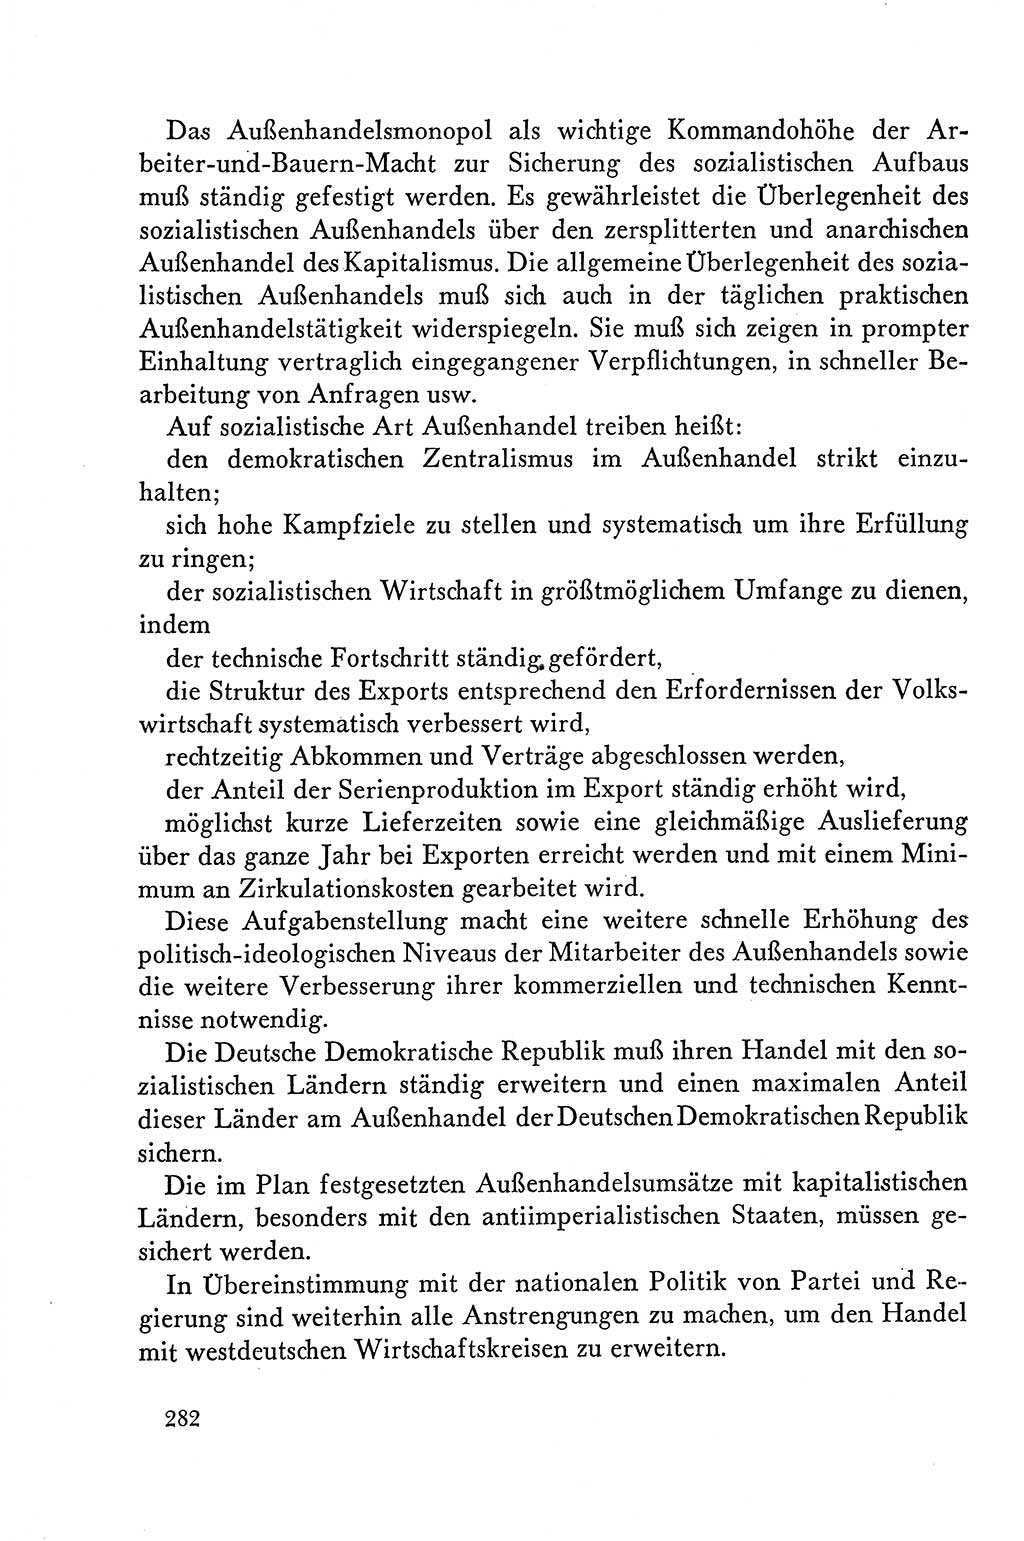 Dokumente der Sozialistischen Einheitspartei Deutschlands (SED) [Deutsche Demokratische Republik (DDR)] 1958-1959, Seite 282 (Dok. SED DDR 1958-1959, S. 282)